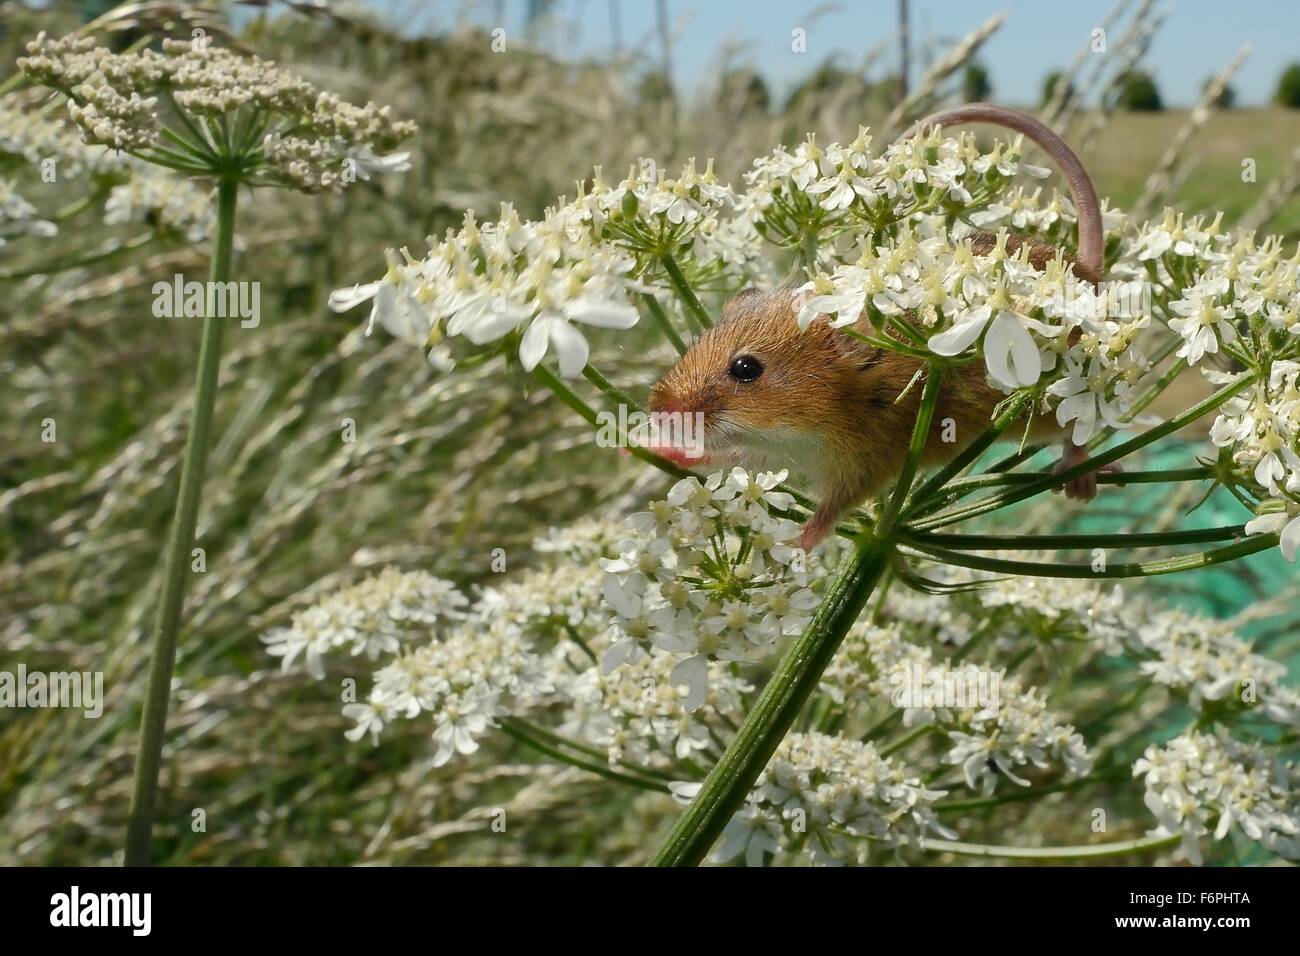 Zwergmaus (Micromys Minutus) auf gemeinsame Bärenklau (Heracleum Sphondylium) Flowerhead nach seiner Freilassung, Moulton, UK. Stockfoto